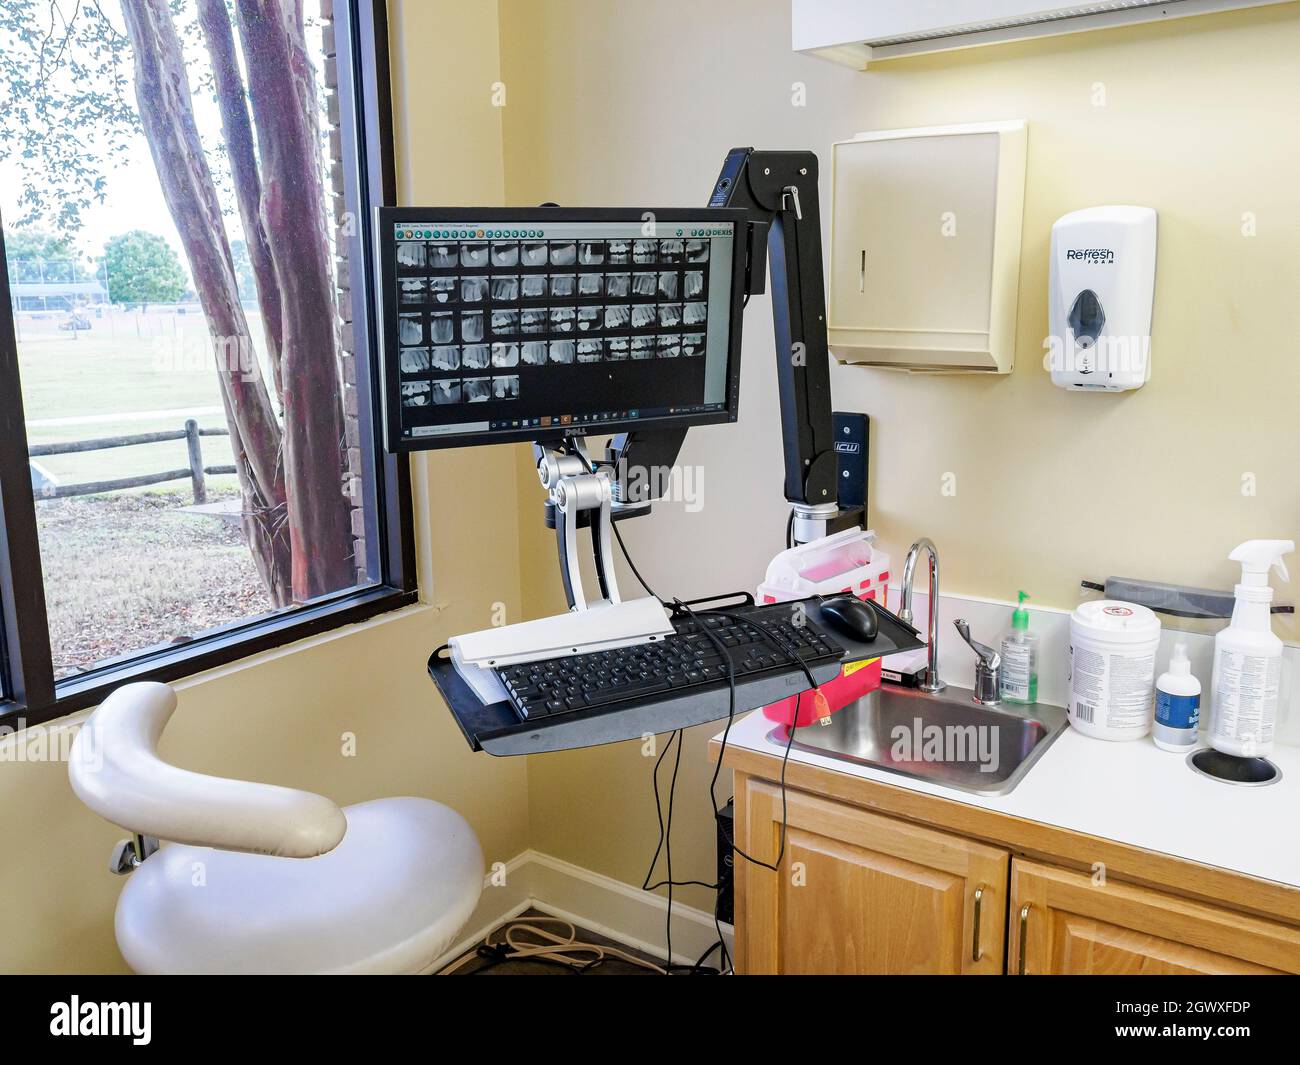 Digitale zahnärztliche Röntgenaufnahmen oder Röntgenaufnahmen von Patienten auf einem Computerbildschirm im zahnärztlichen oder zahnärztlichen Untersuchungsraum. Stockfoto